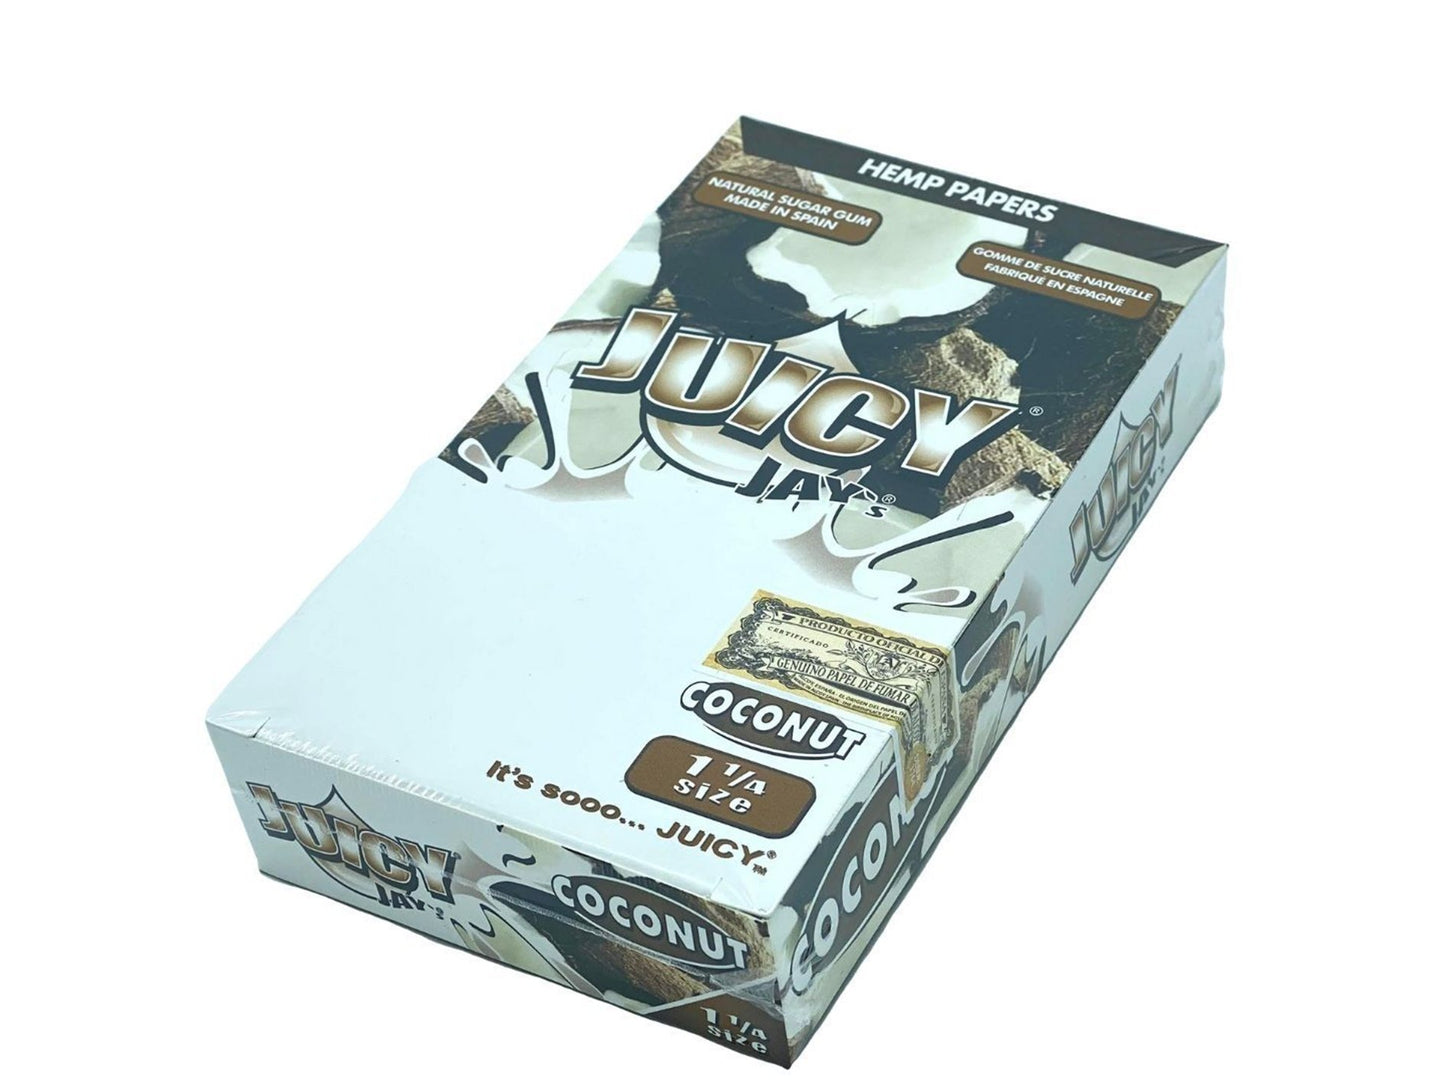 JUICY JAYS 1¼ Flavoured Papers - 24 Pack Box - VIR Wholesale